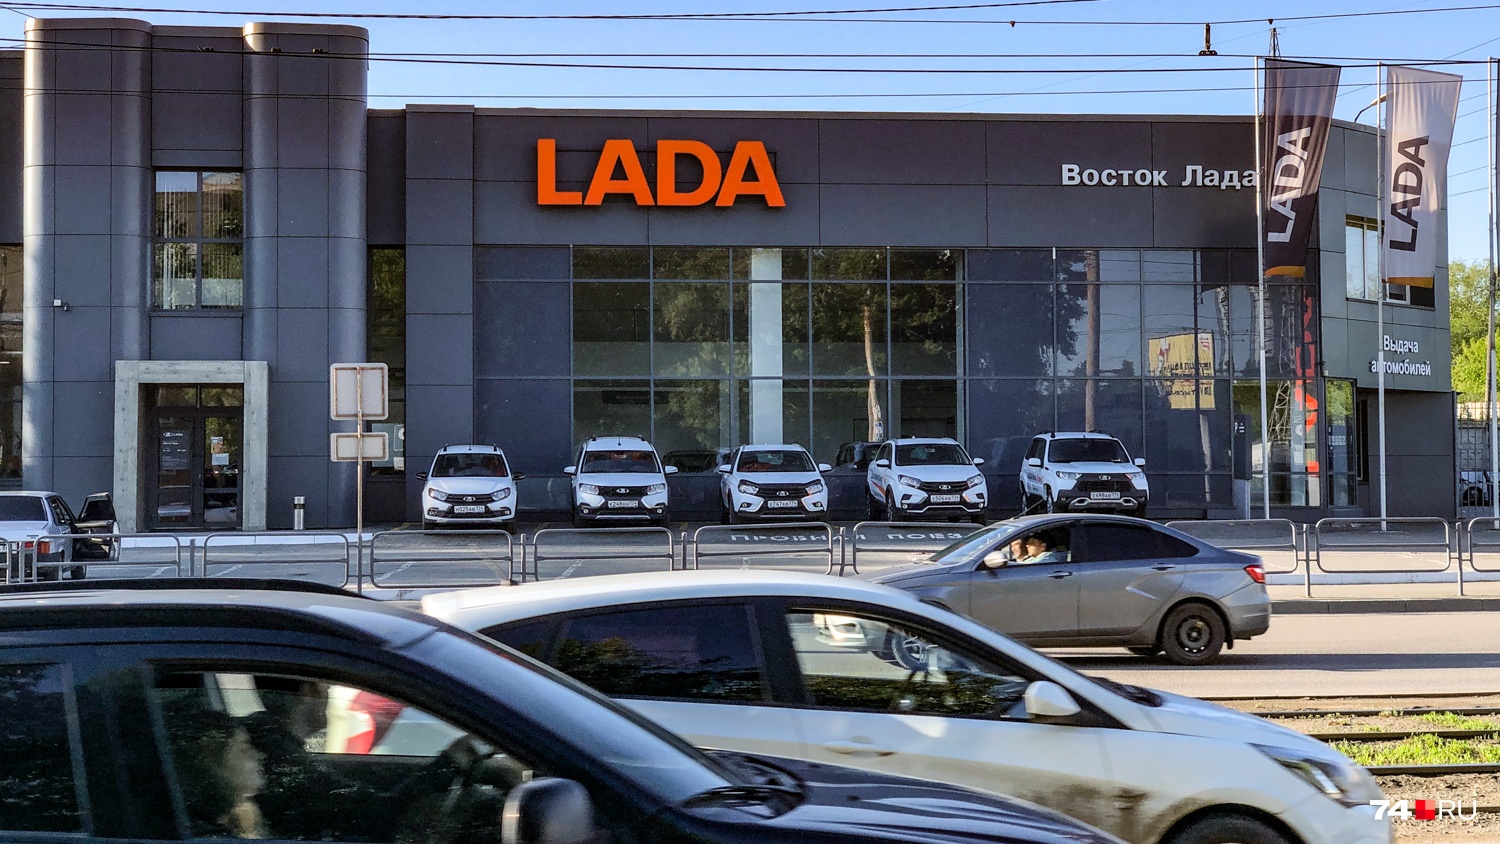 У дилеров Lada — видимое благополучие. Склады машин у большинства дилеров есть, но поступления сократились: завод лихорадило всю весну